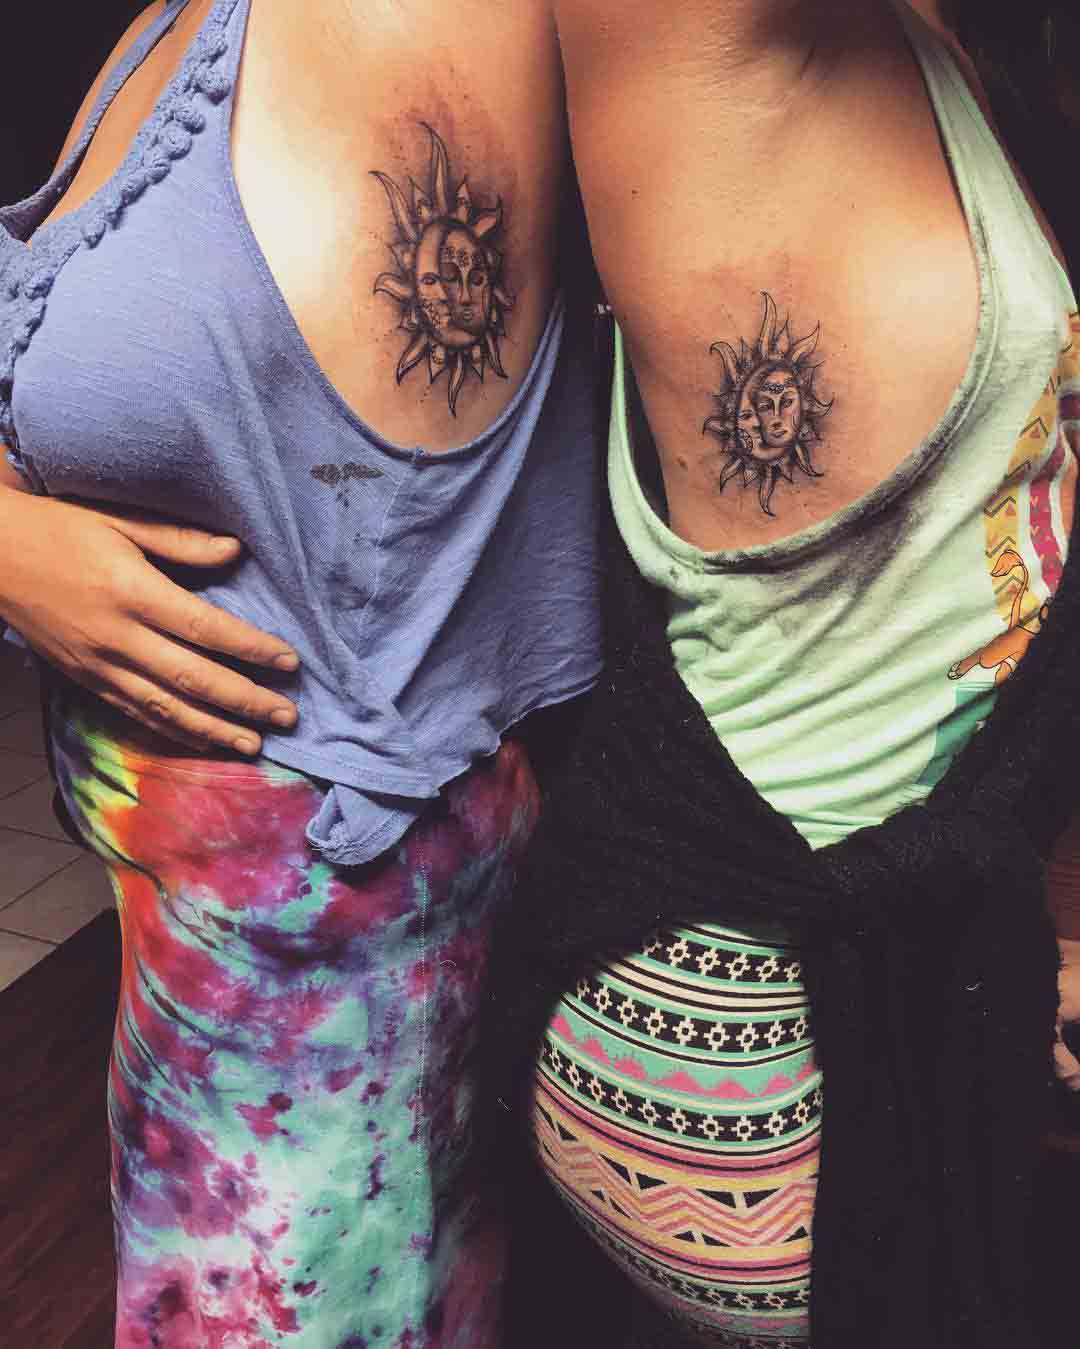 Sister tattoos - Best Tattoo Ideas Gallery